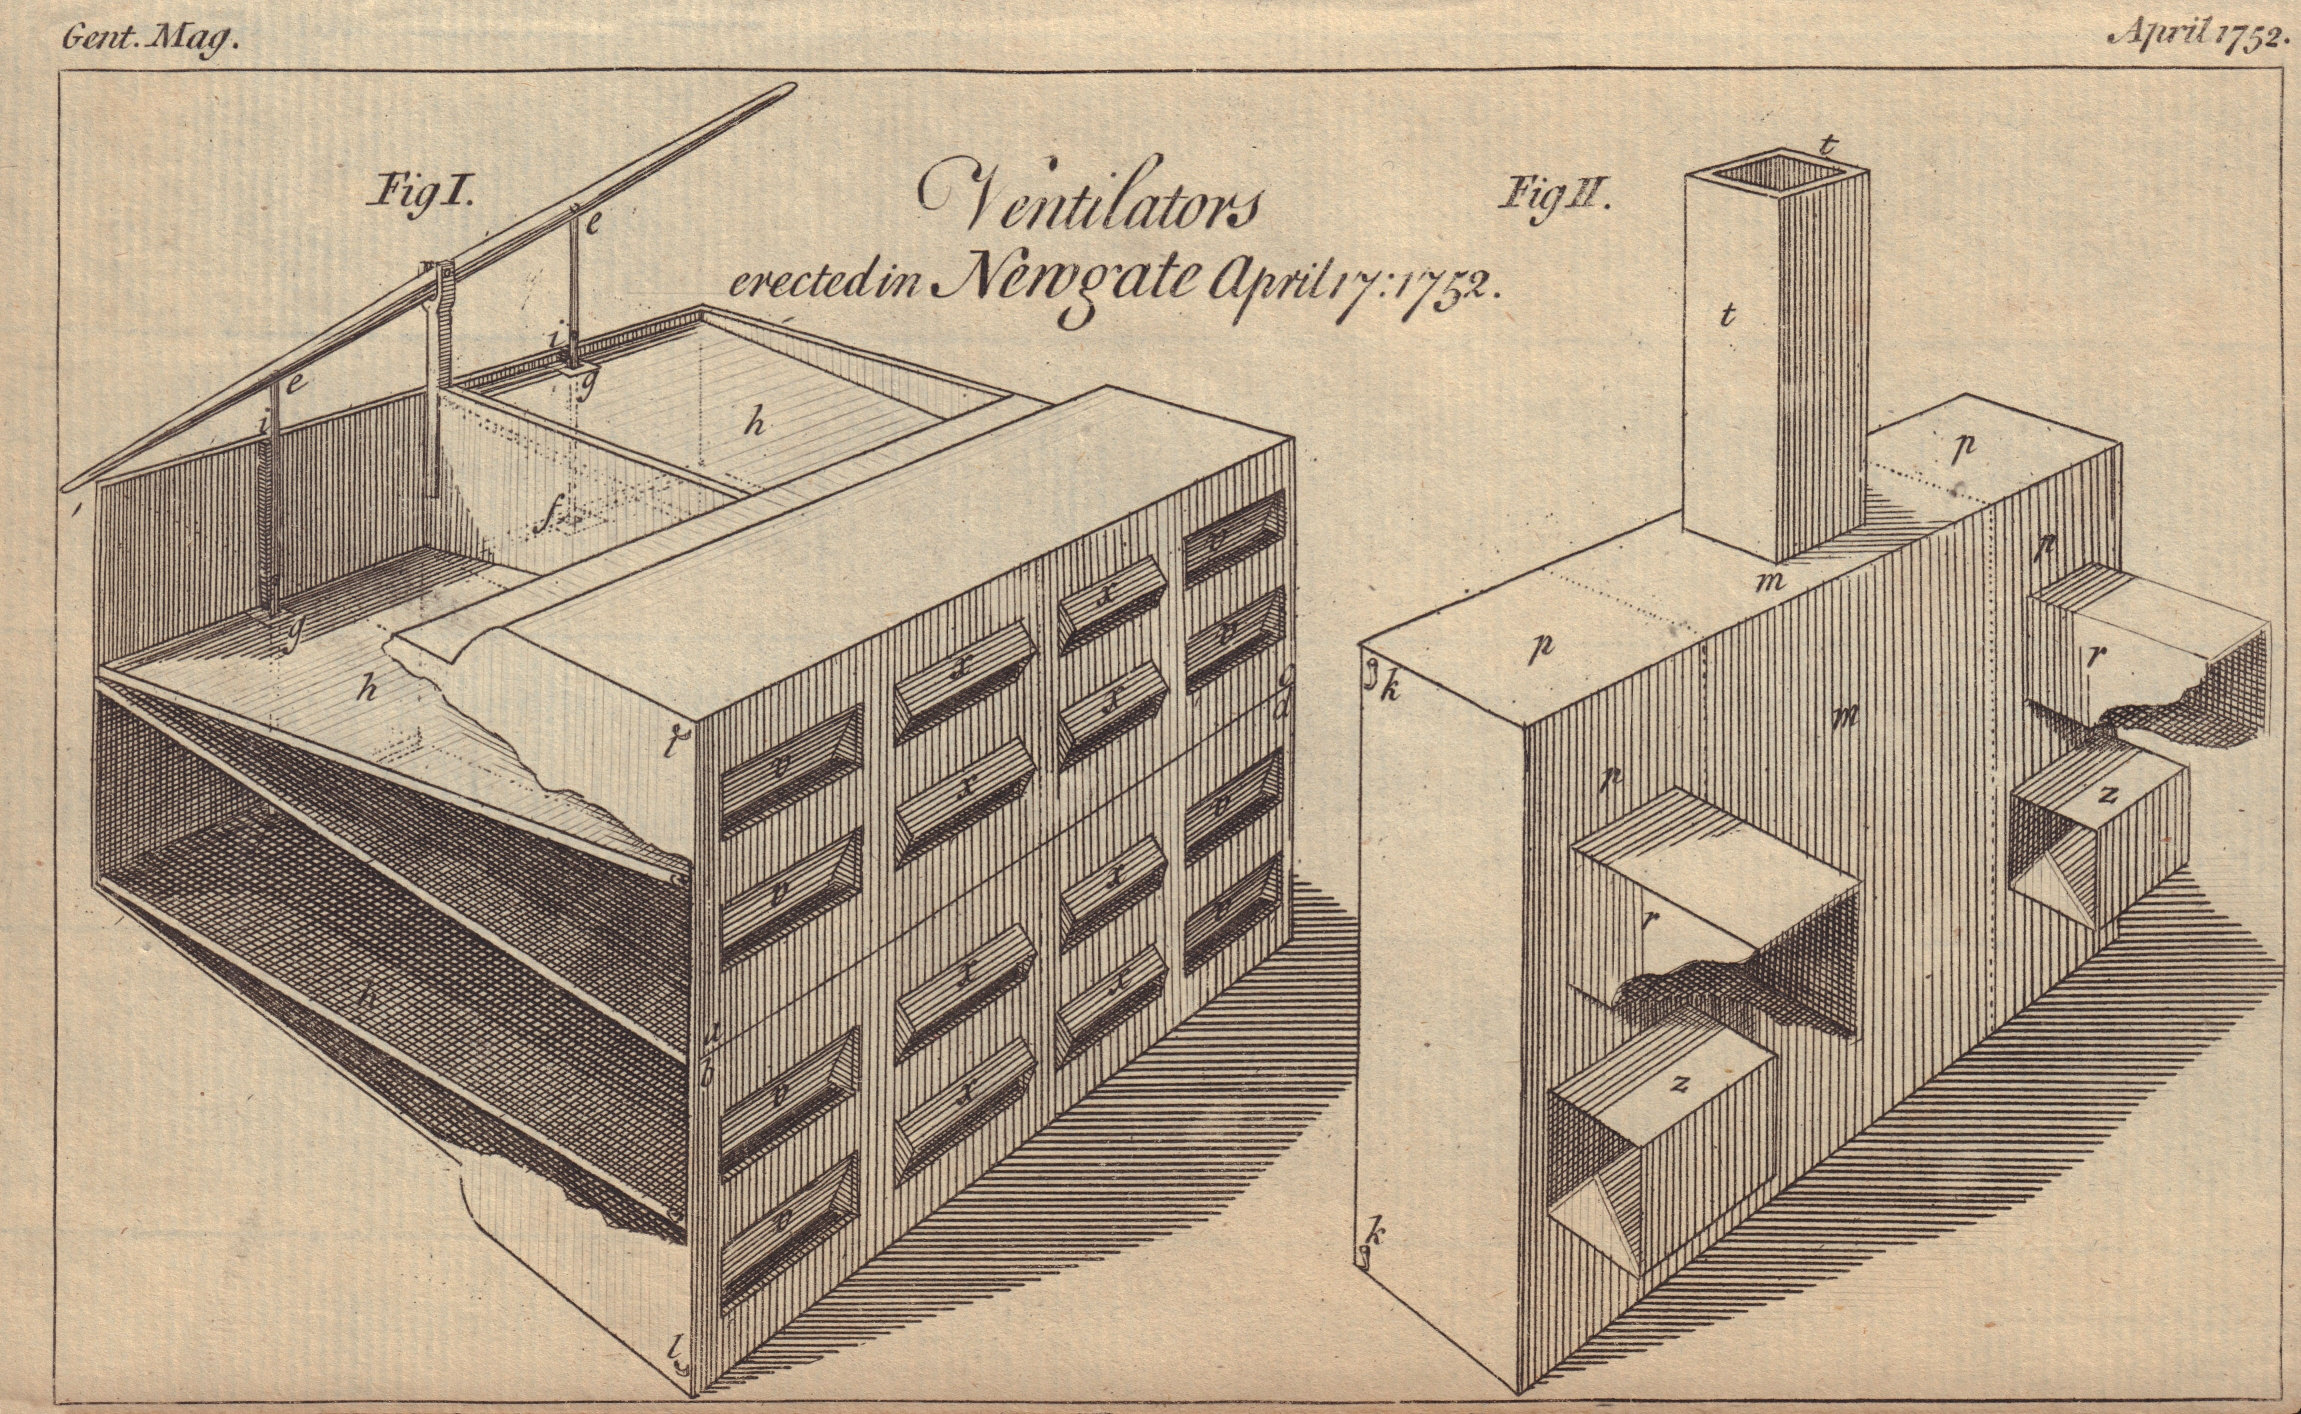 Associate Product Ventilators erected in Newgate April 17. 1752. London. GENTS MAG 1752 print